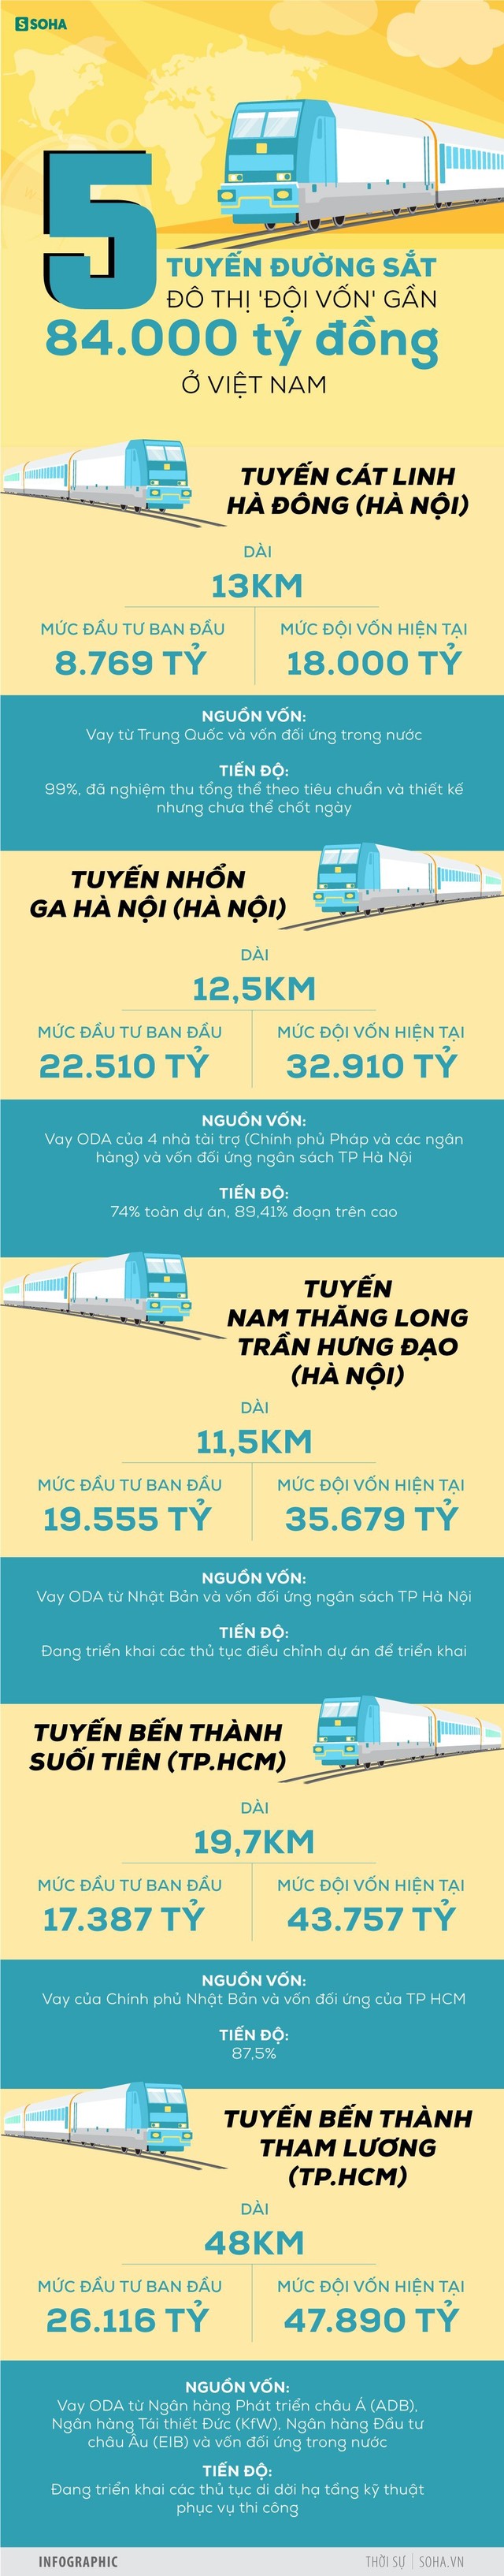 [INFOGRAPHIC] 5 tuyến đường sắt đội vốn gần 4 tỷ đô: Dự án Trung Quốc xây tăng hơn 10.000 tỷ, không biết khi nào chạy - Ảnh 1.